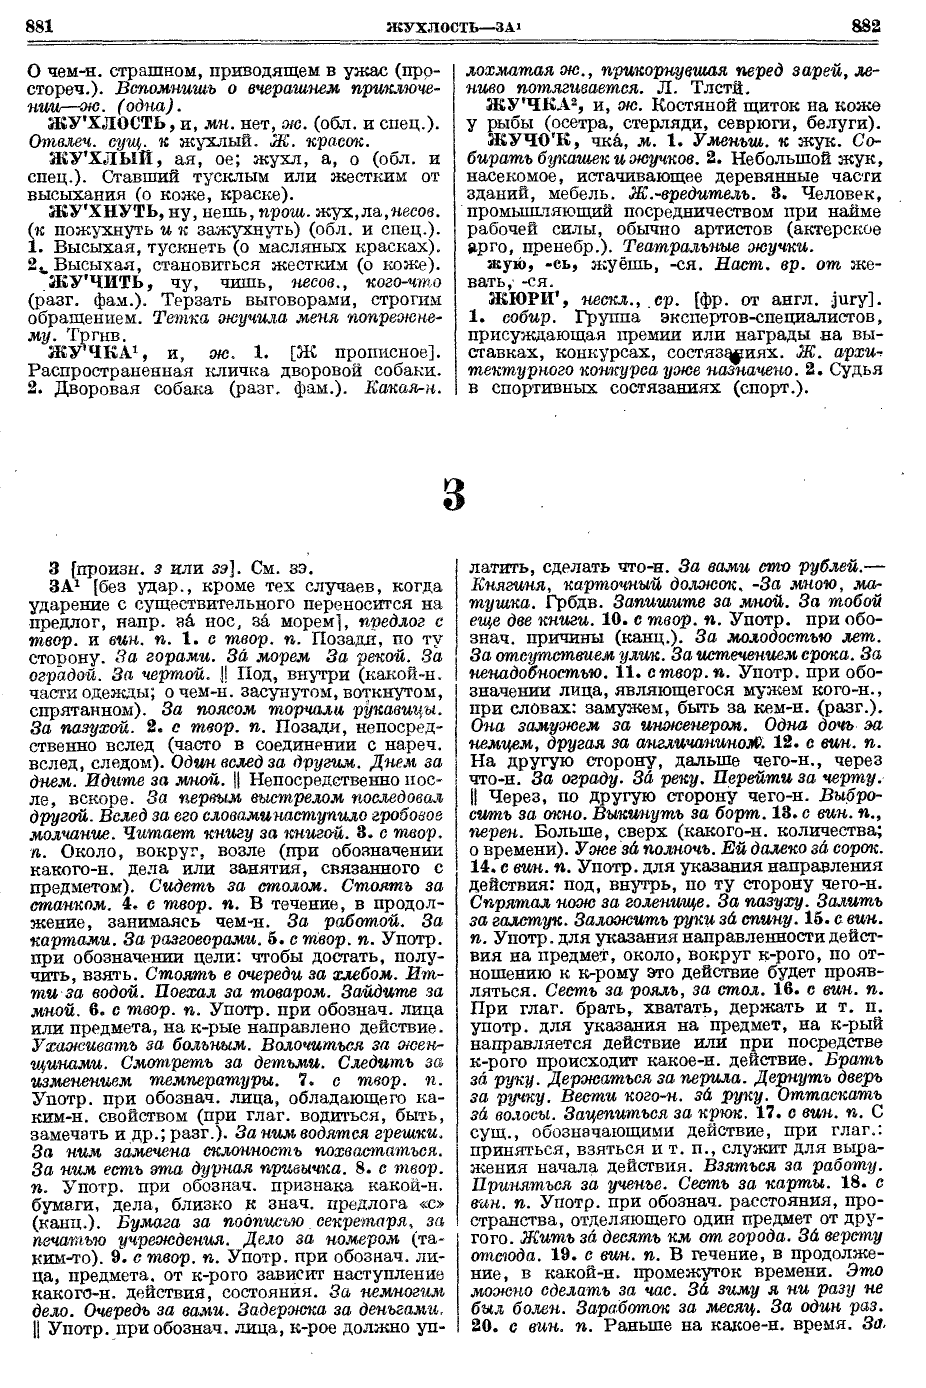 Фотокопия pdf / скан страницы 479 толкового словаря Ушакова (том 1)